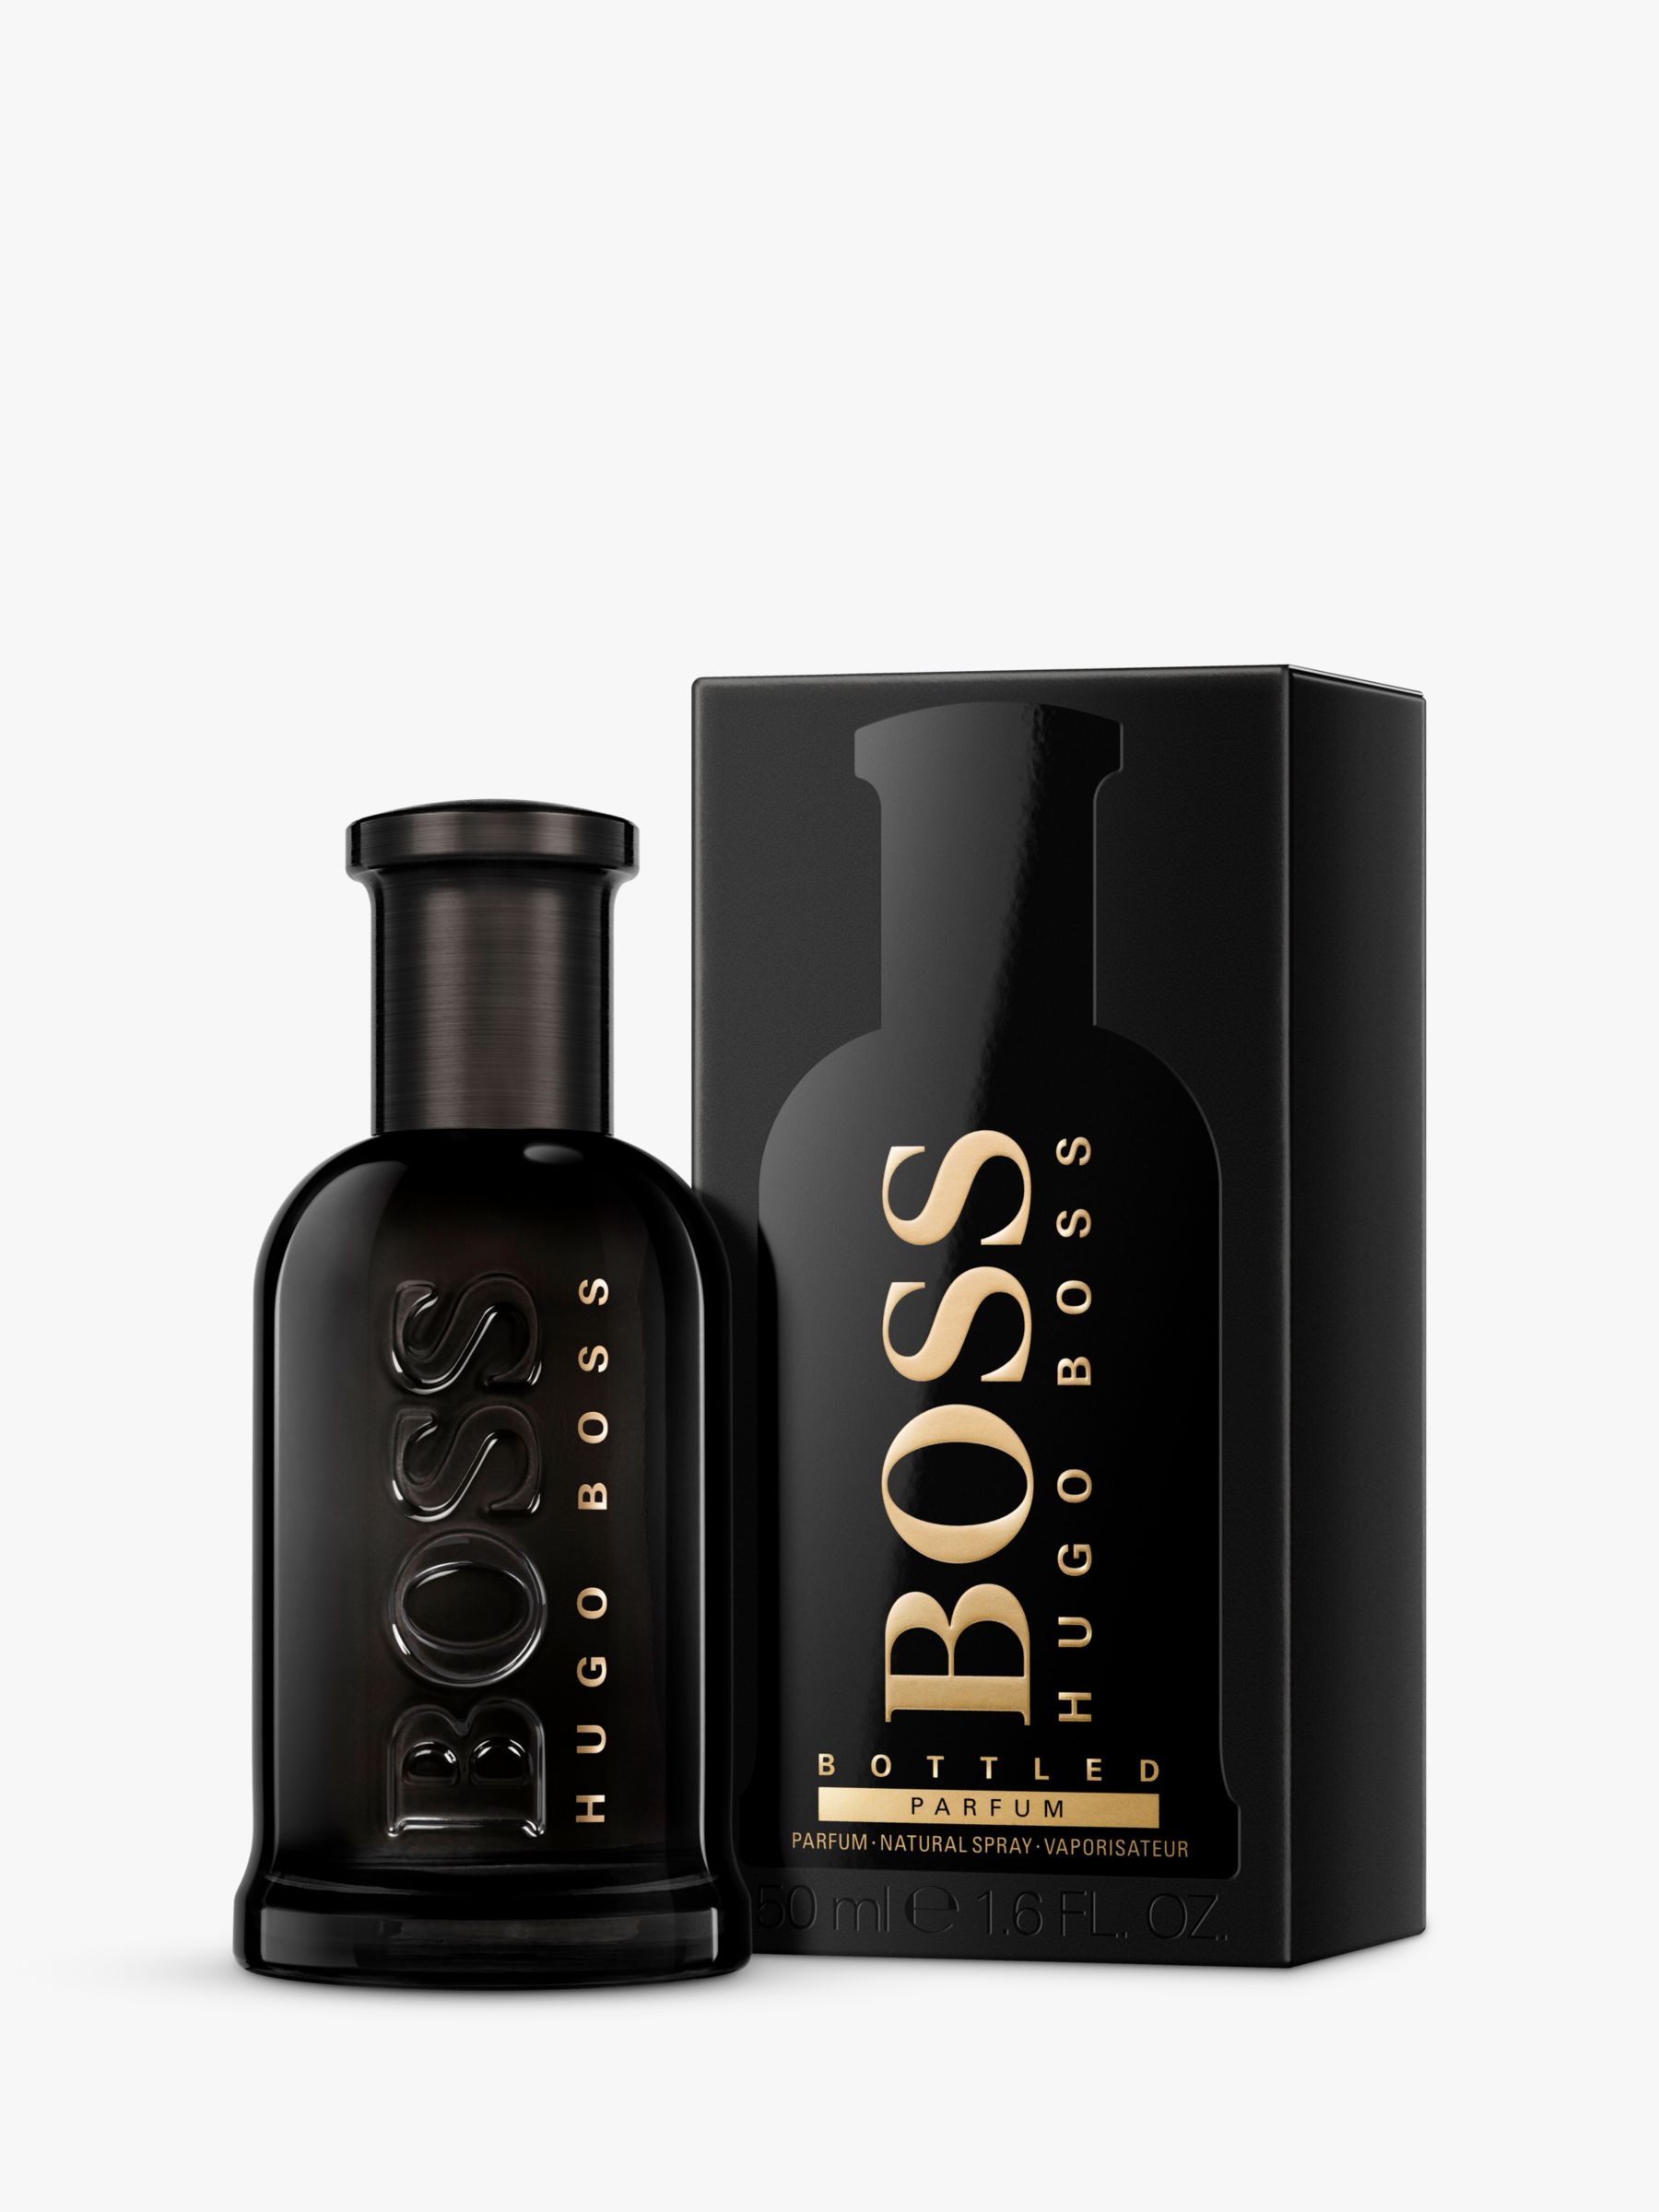 HUGO BOSS BOSS Bottled Parfum, 50ml